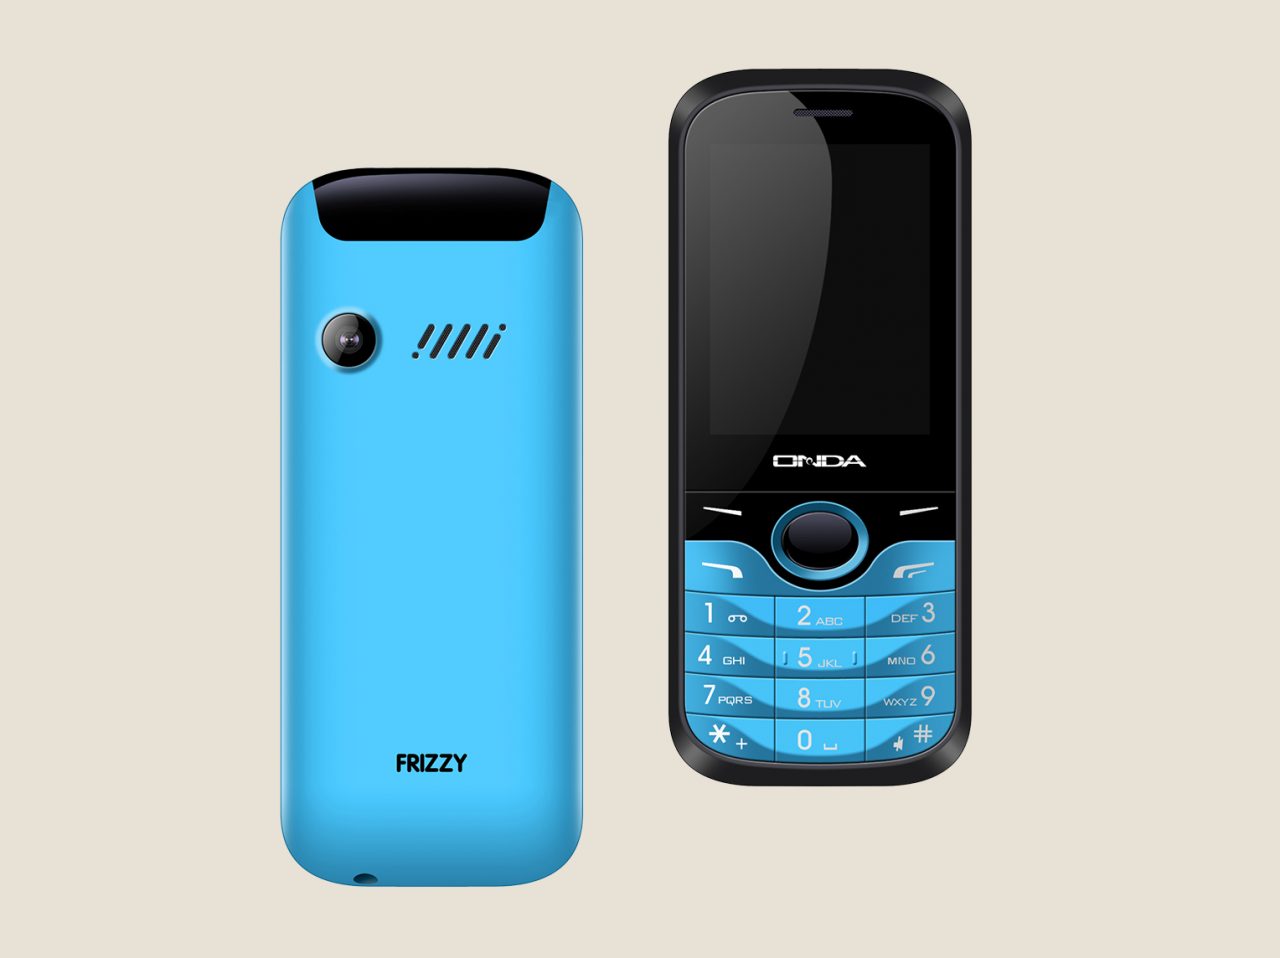 Onda Frizzy ufficiale: sembra un feature phone, ma invece ha Android (4.4.2)